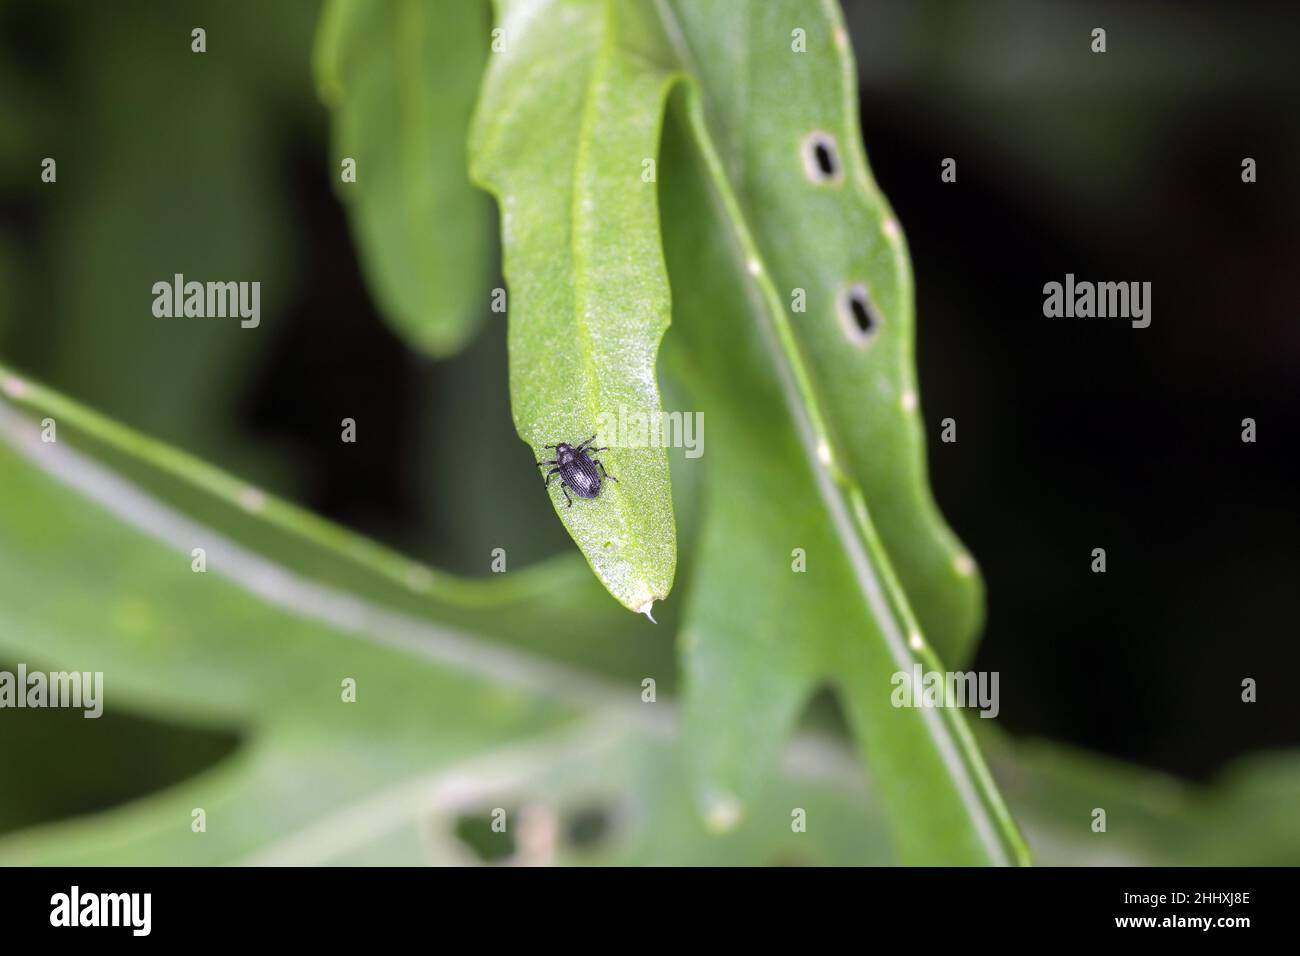 Un minuscule coléoptère du genre Ceutorhynchus sur une plante arugula endommagée - Eruca sativa. Banque D'Images